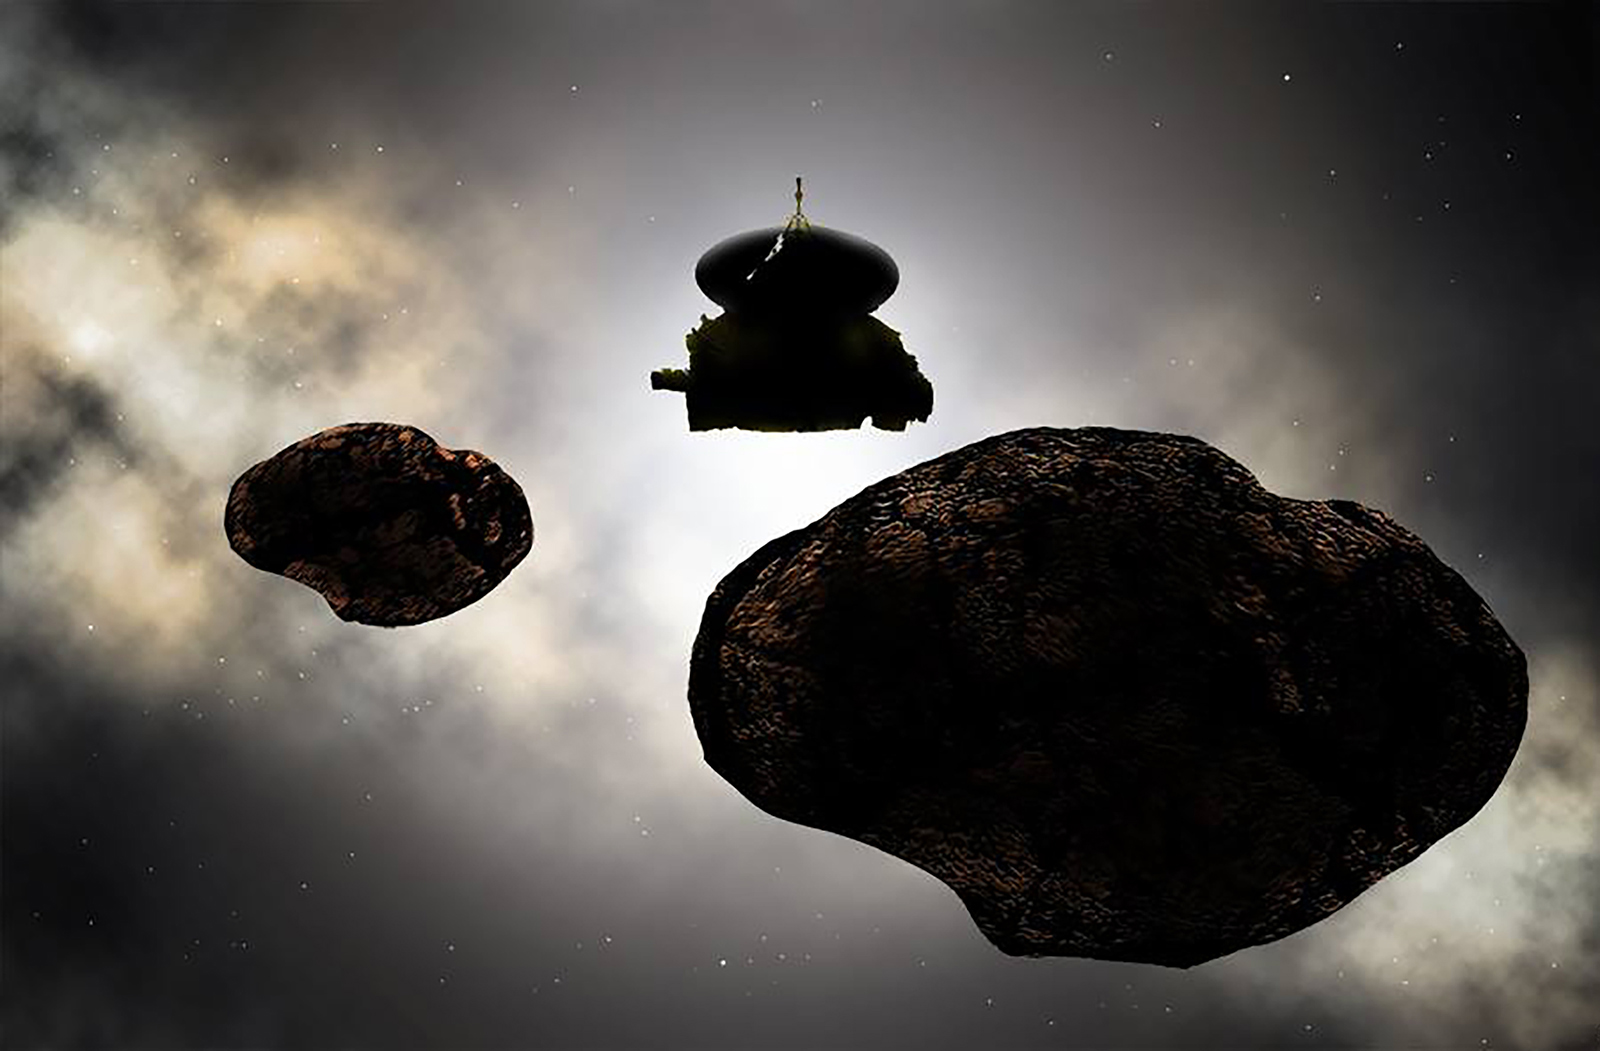 Artist flyby of Kuiper Belt object known as 2014 MU69